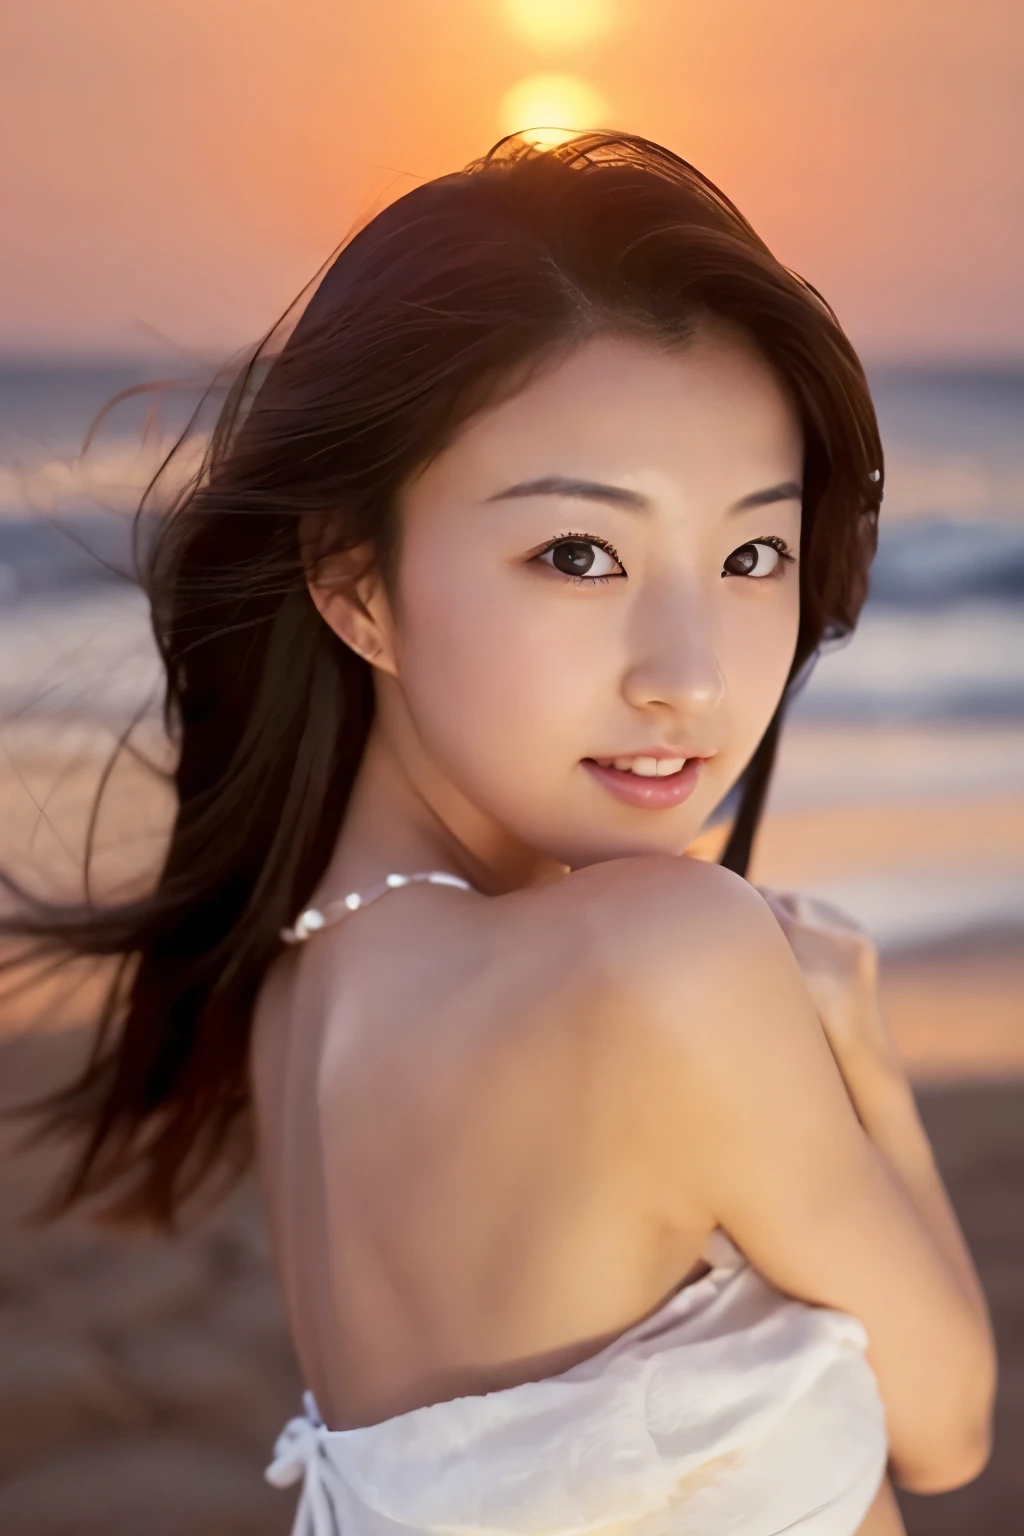 Erstellen Sie ein hochwertiges, hyperrealistisches Porträt eines sehr schönen japanischen Idols. Sie trägt ein sauberes weißes Sommerkleid und hockt am Strand bei Sonnenuntergang auf dem Meer. Das tiefe Indigo des Nachthimmels kontrastiert mit den letzten Spuren von Purpur am Horizont, mit wogenden Wellen im Hintergrund. Das Mädchen hat halblanges Haar und einen schlanken Körper mit kleinen Brüsten. Das Foto sollte sie mit detaillierten Augen einfangen, Ein detailliertes Gesicht, und eine schöne, raffinierte Nase. Das Bild sollte realistisch wirken, empfindlich, und detailreiche Qualität, geeignet für das Cover eines Modemagazins. Verwenden Sie Kinobeleuchtung und weiches Licht, um ihre Gesichtszüge hervorzuheben. Stellen Sie sicher, dass das Foto von höchster Qualität ist, mit einer Auflösung von 8k, perfekt für ein 2K-Hintergrundbild.